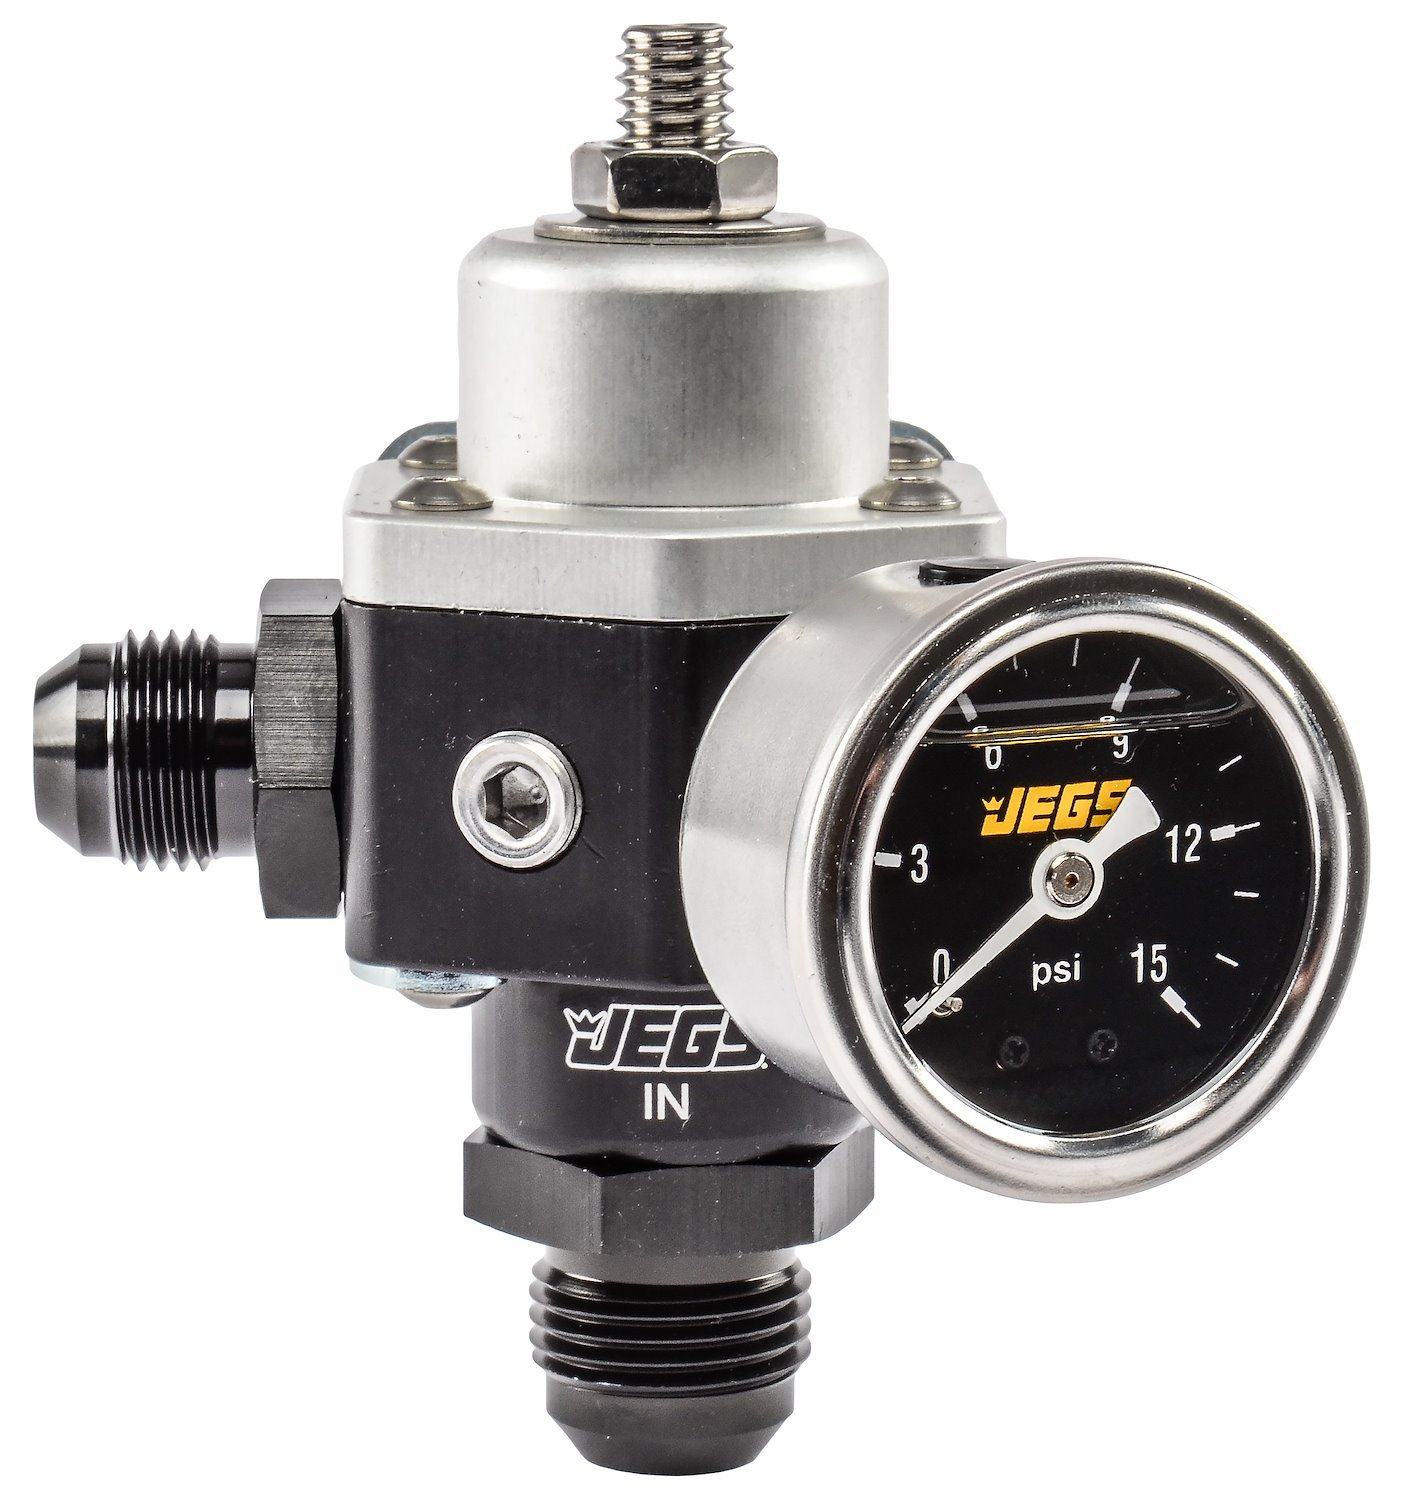 2-Port Pressure Regulator Kit with 5-12 PSI Outlet Pressure